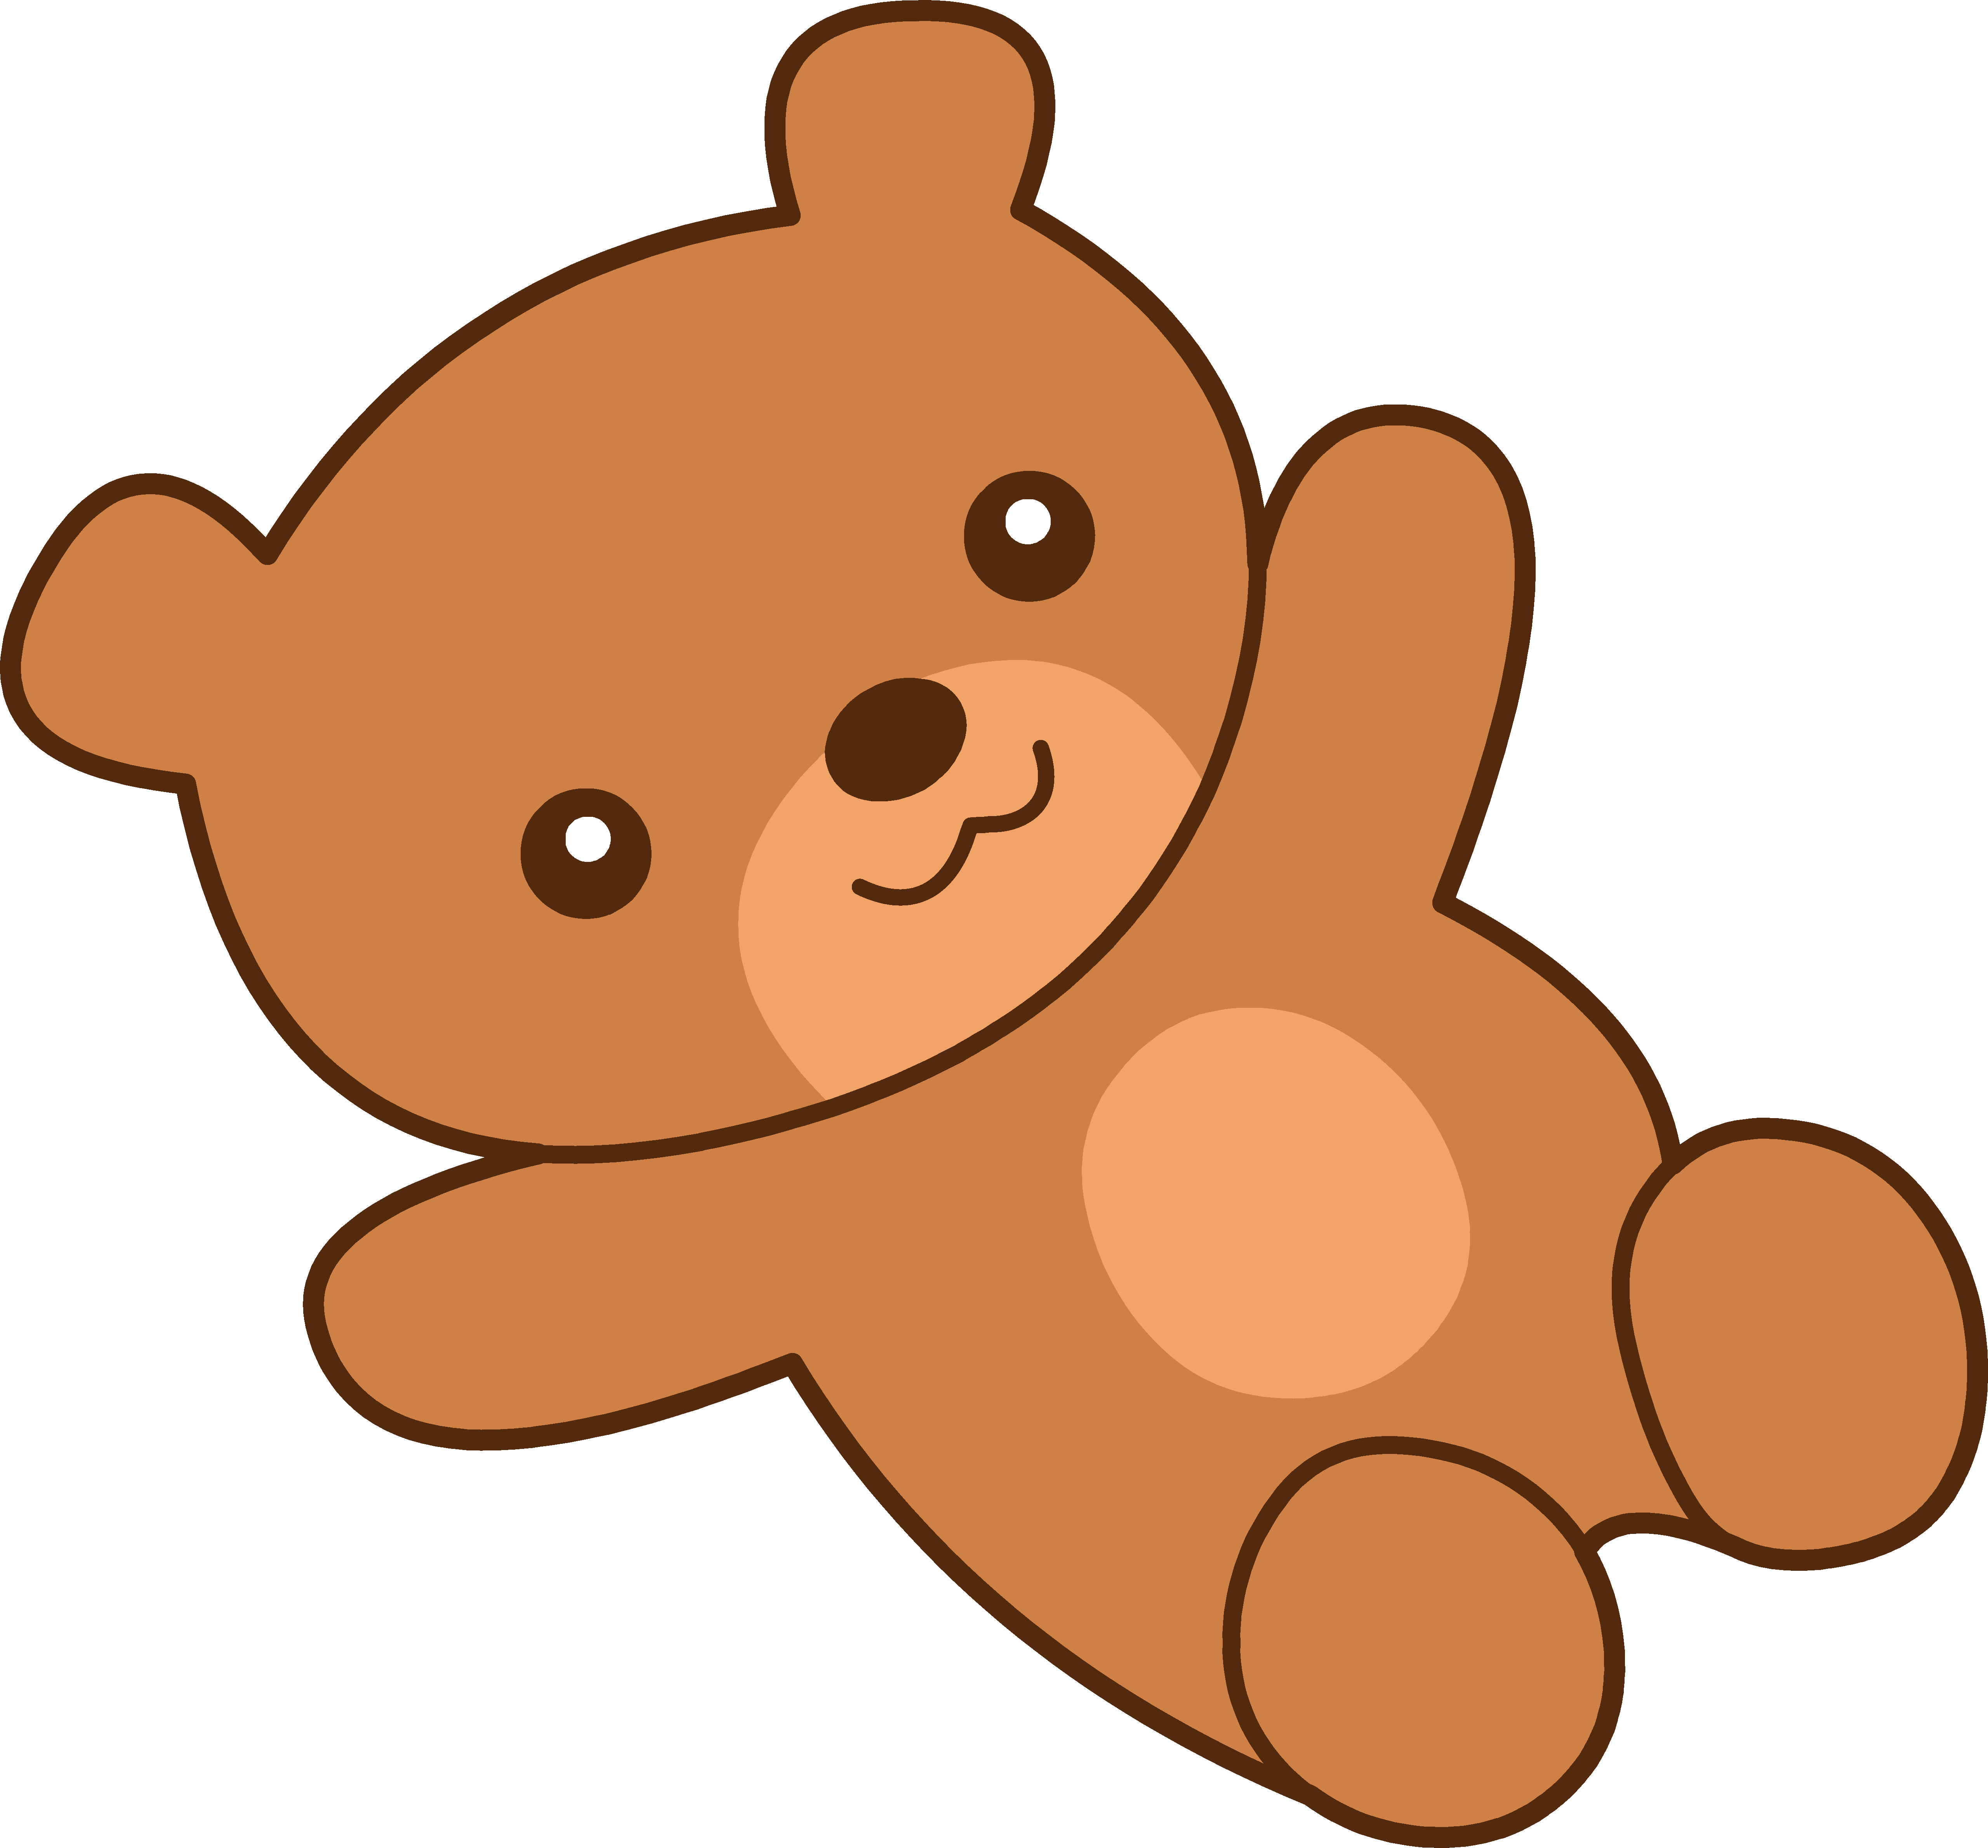 Cartoon teddy bear clipart - ClipartFox